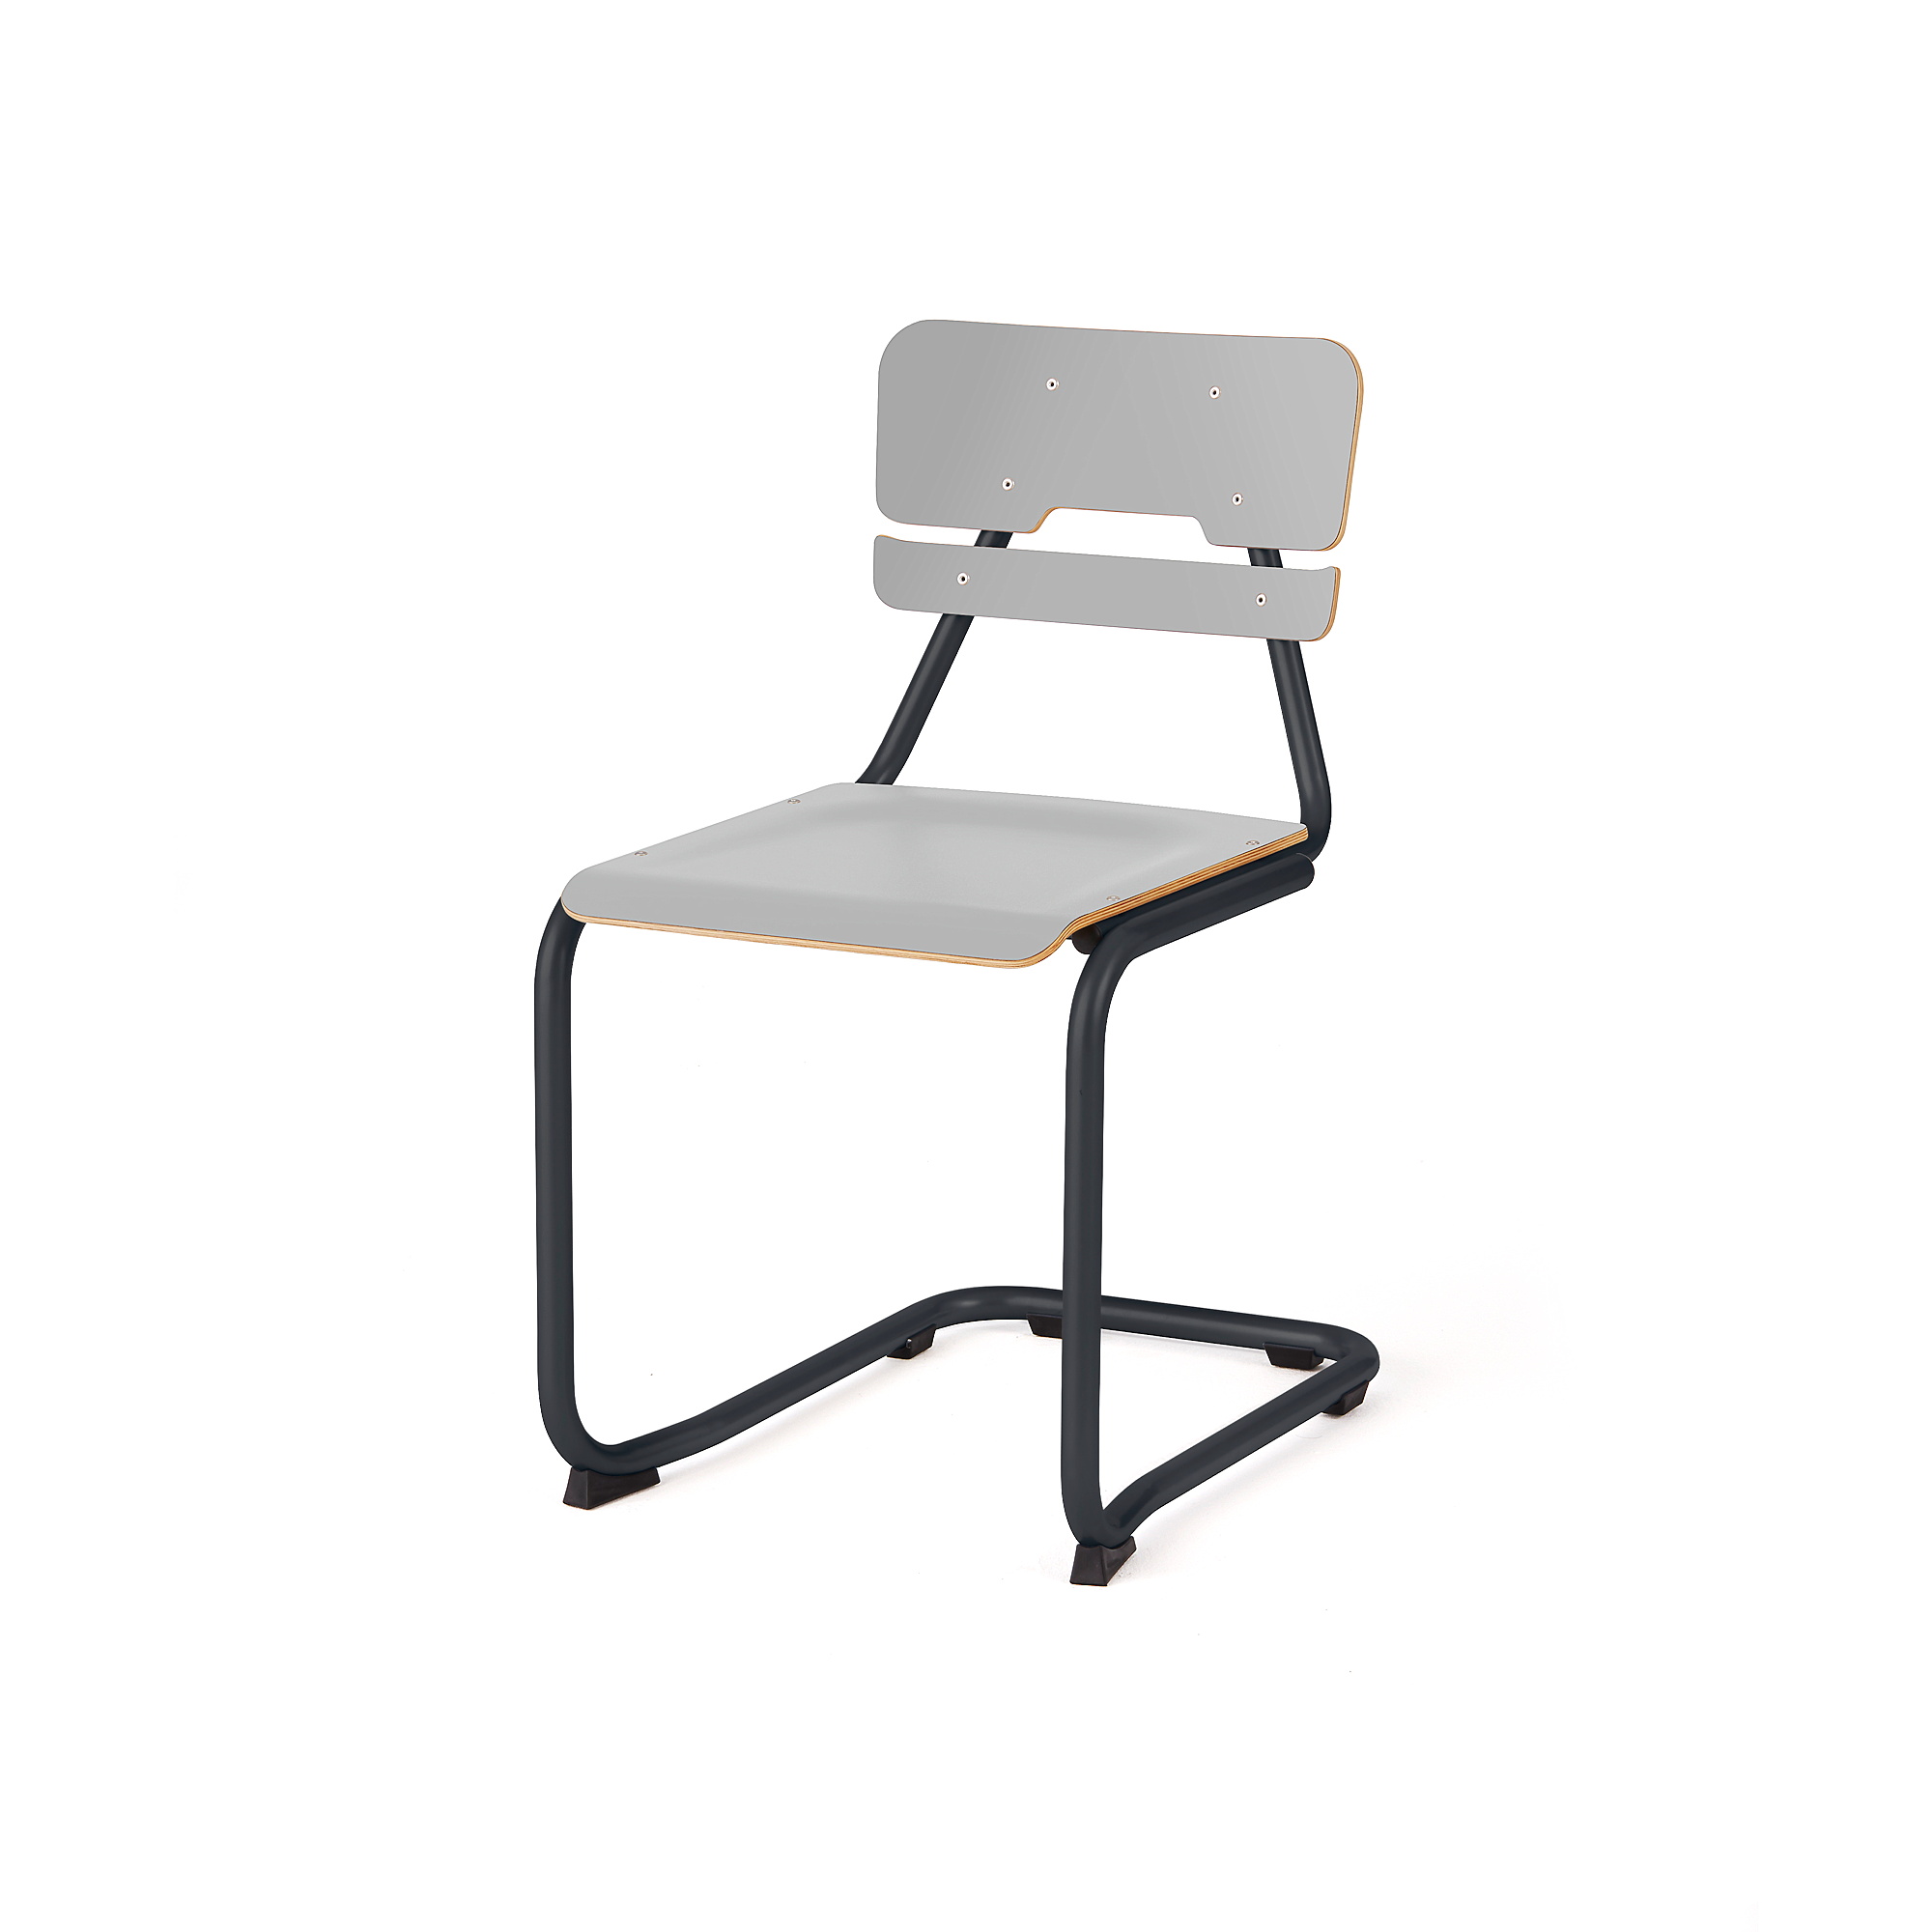 Školní židle LEGERE II, výška 450 mm, antracitově šedá, šedá